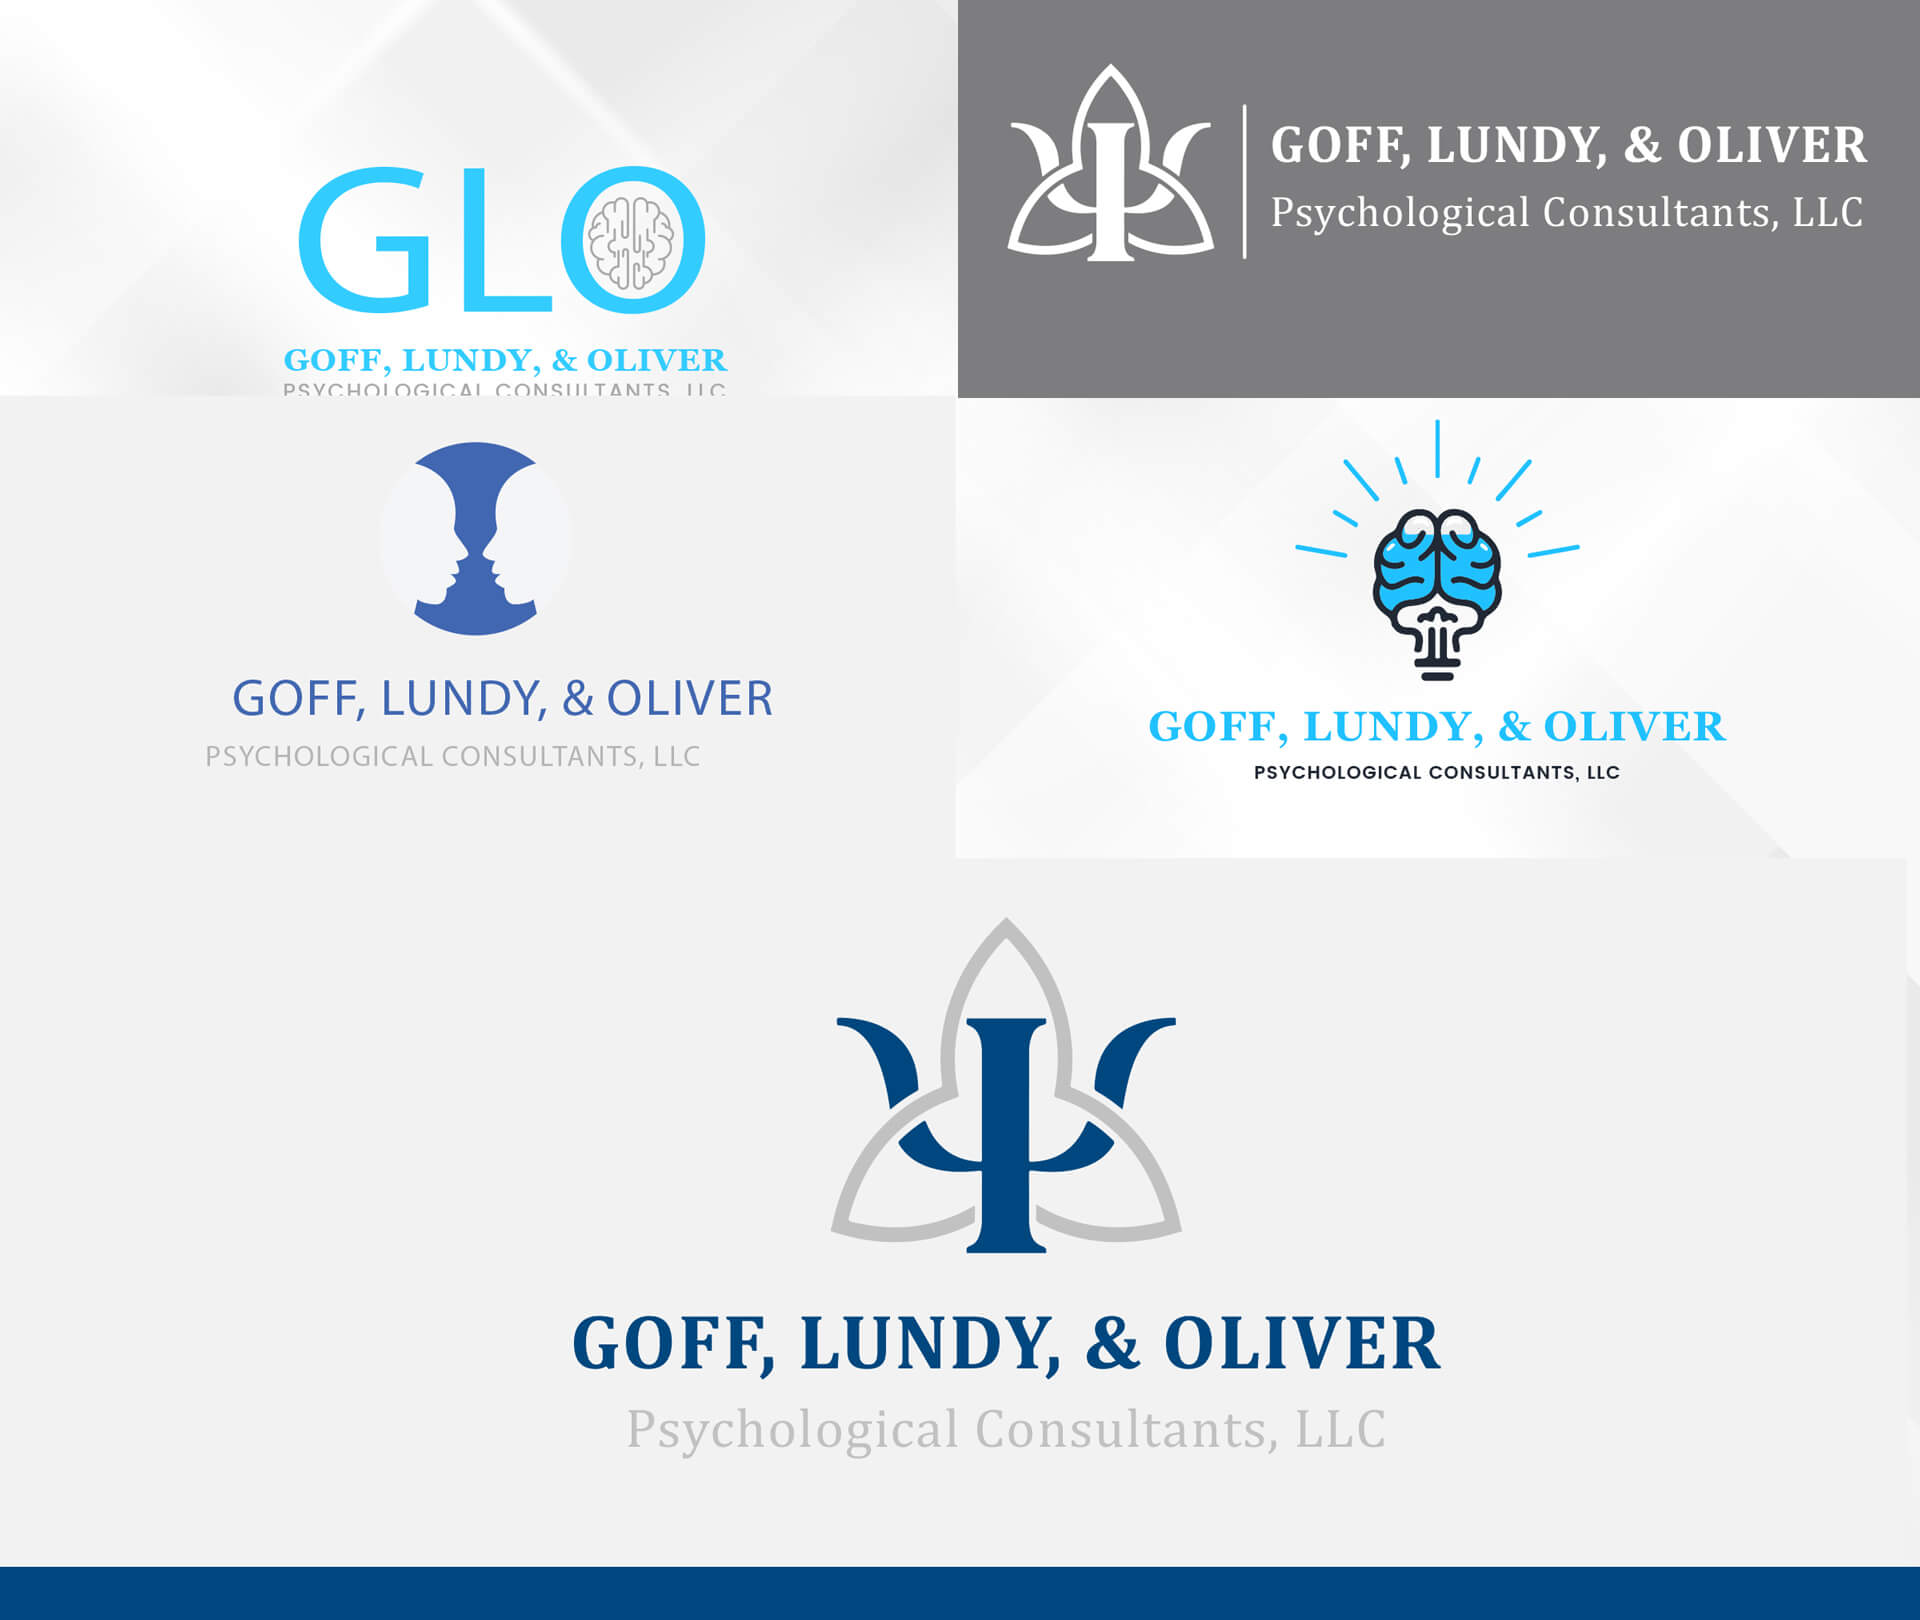 goff-lundy-oliver-design